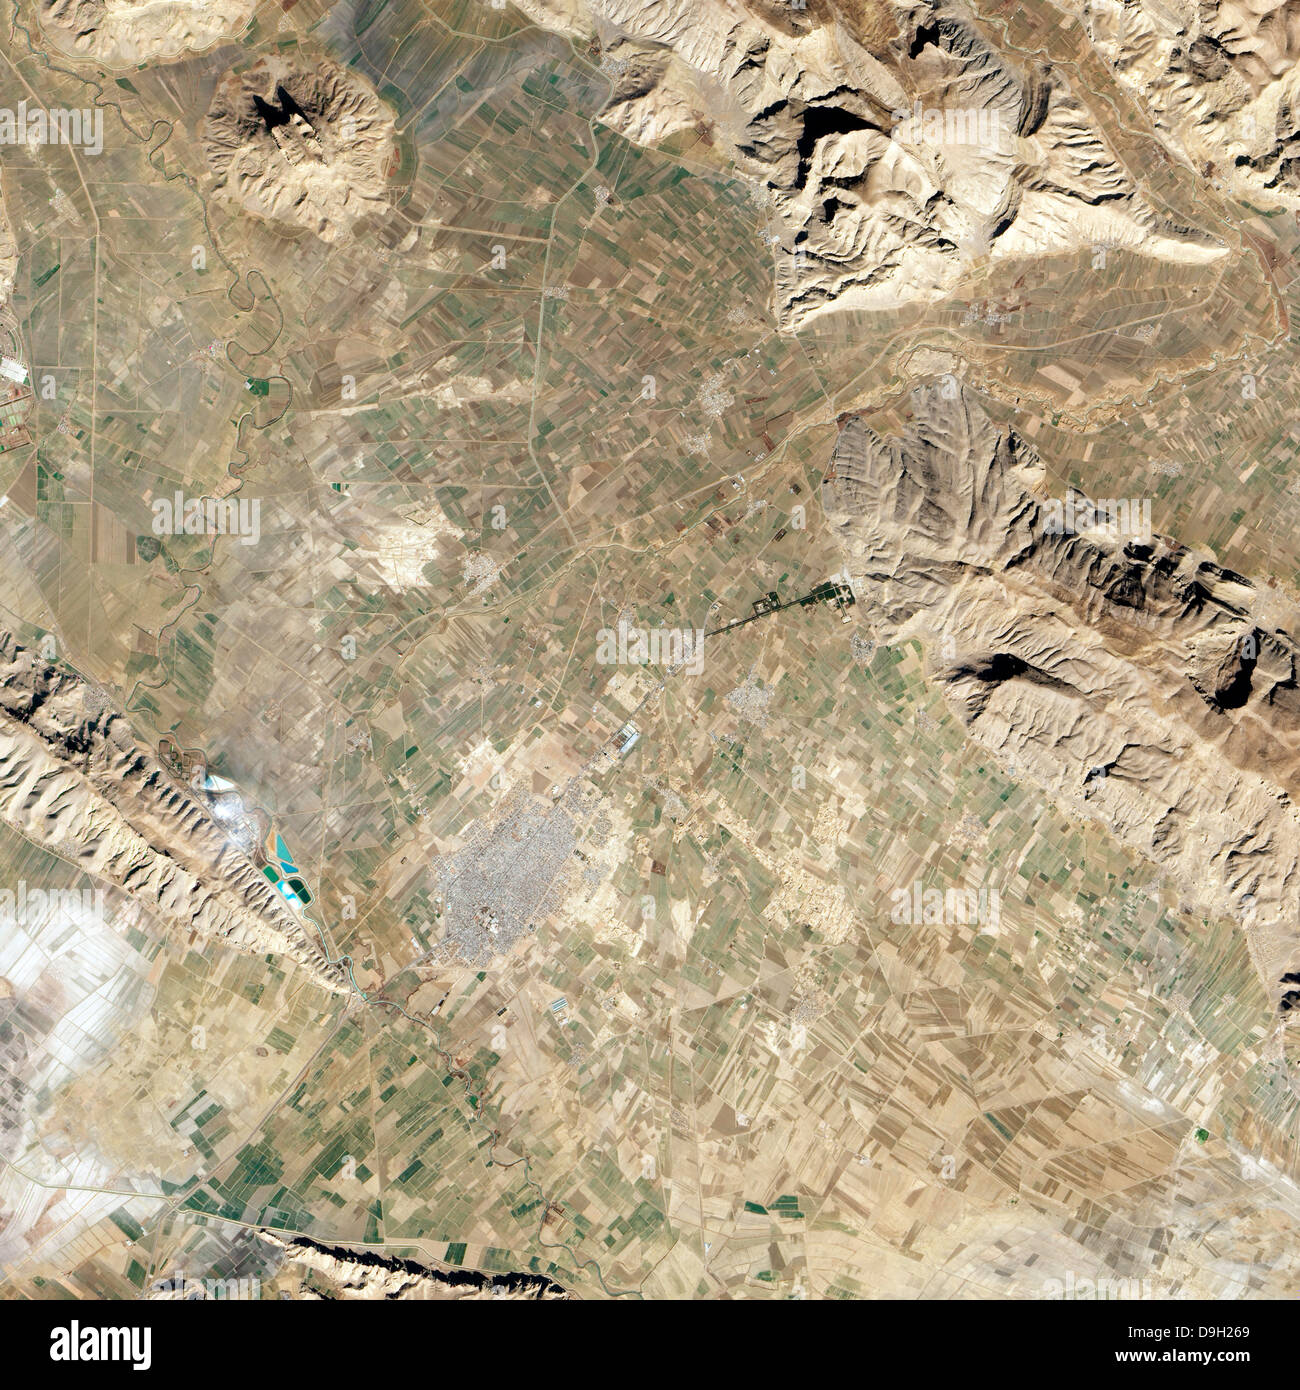 Satellitenansicht von Persepolis und die umliegende Region. Stockfoto